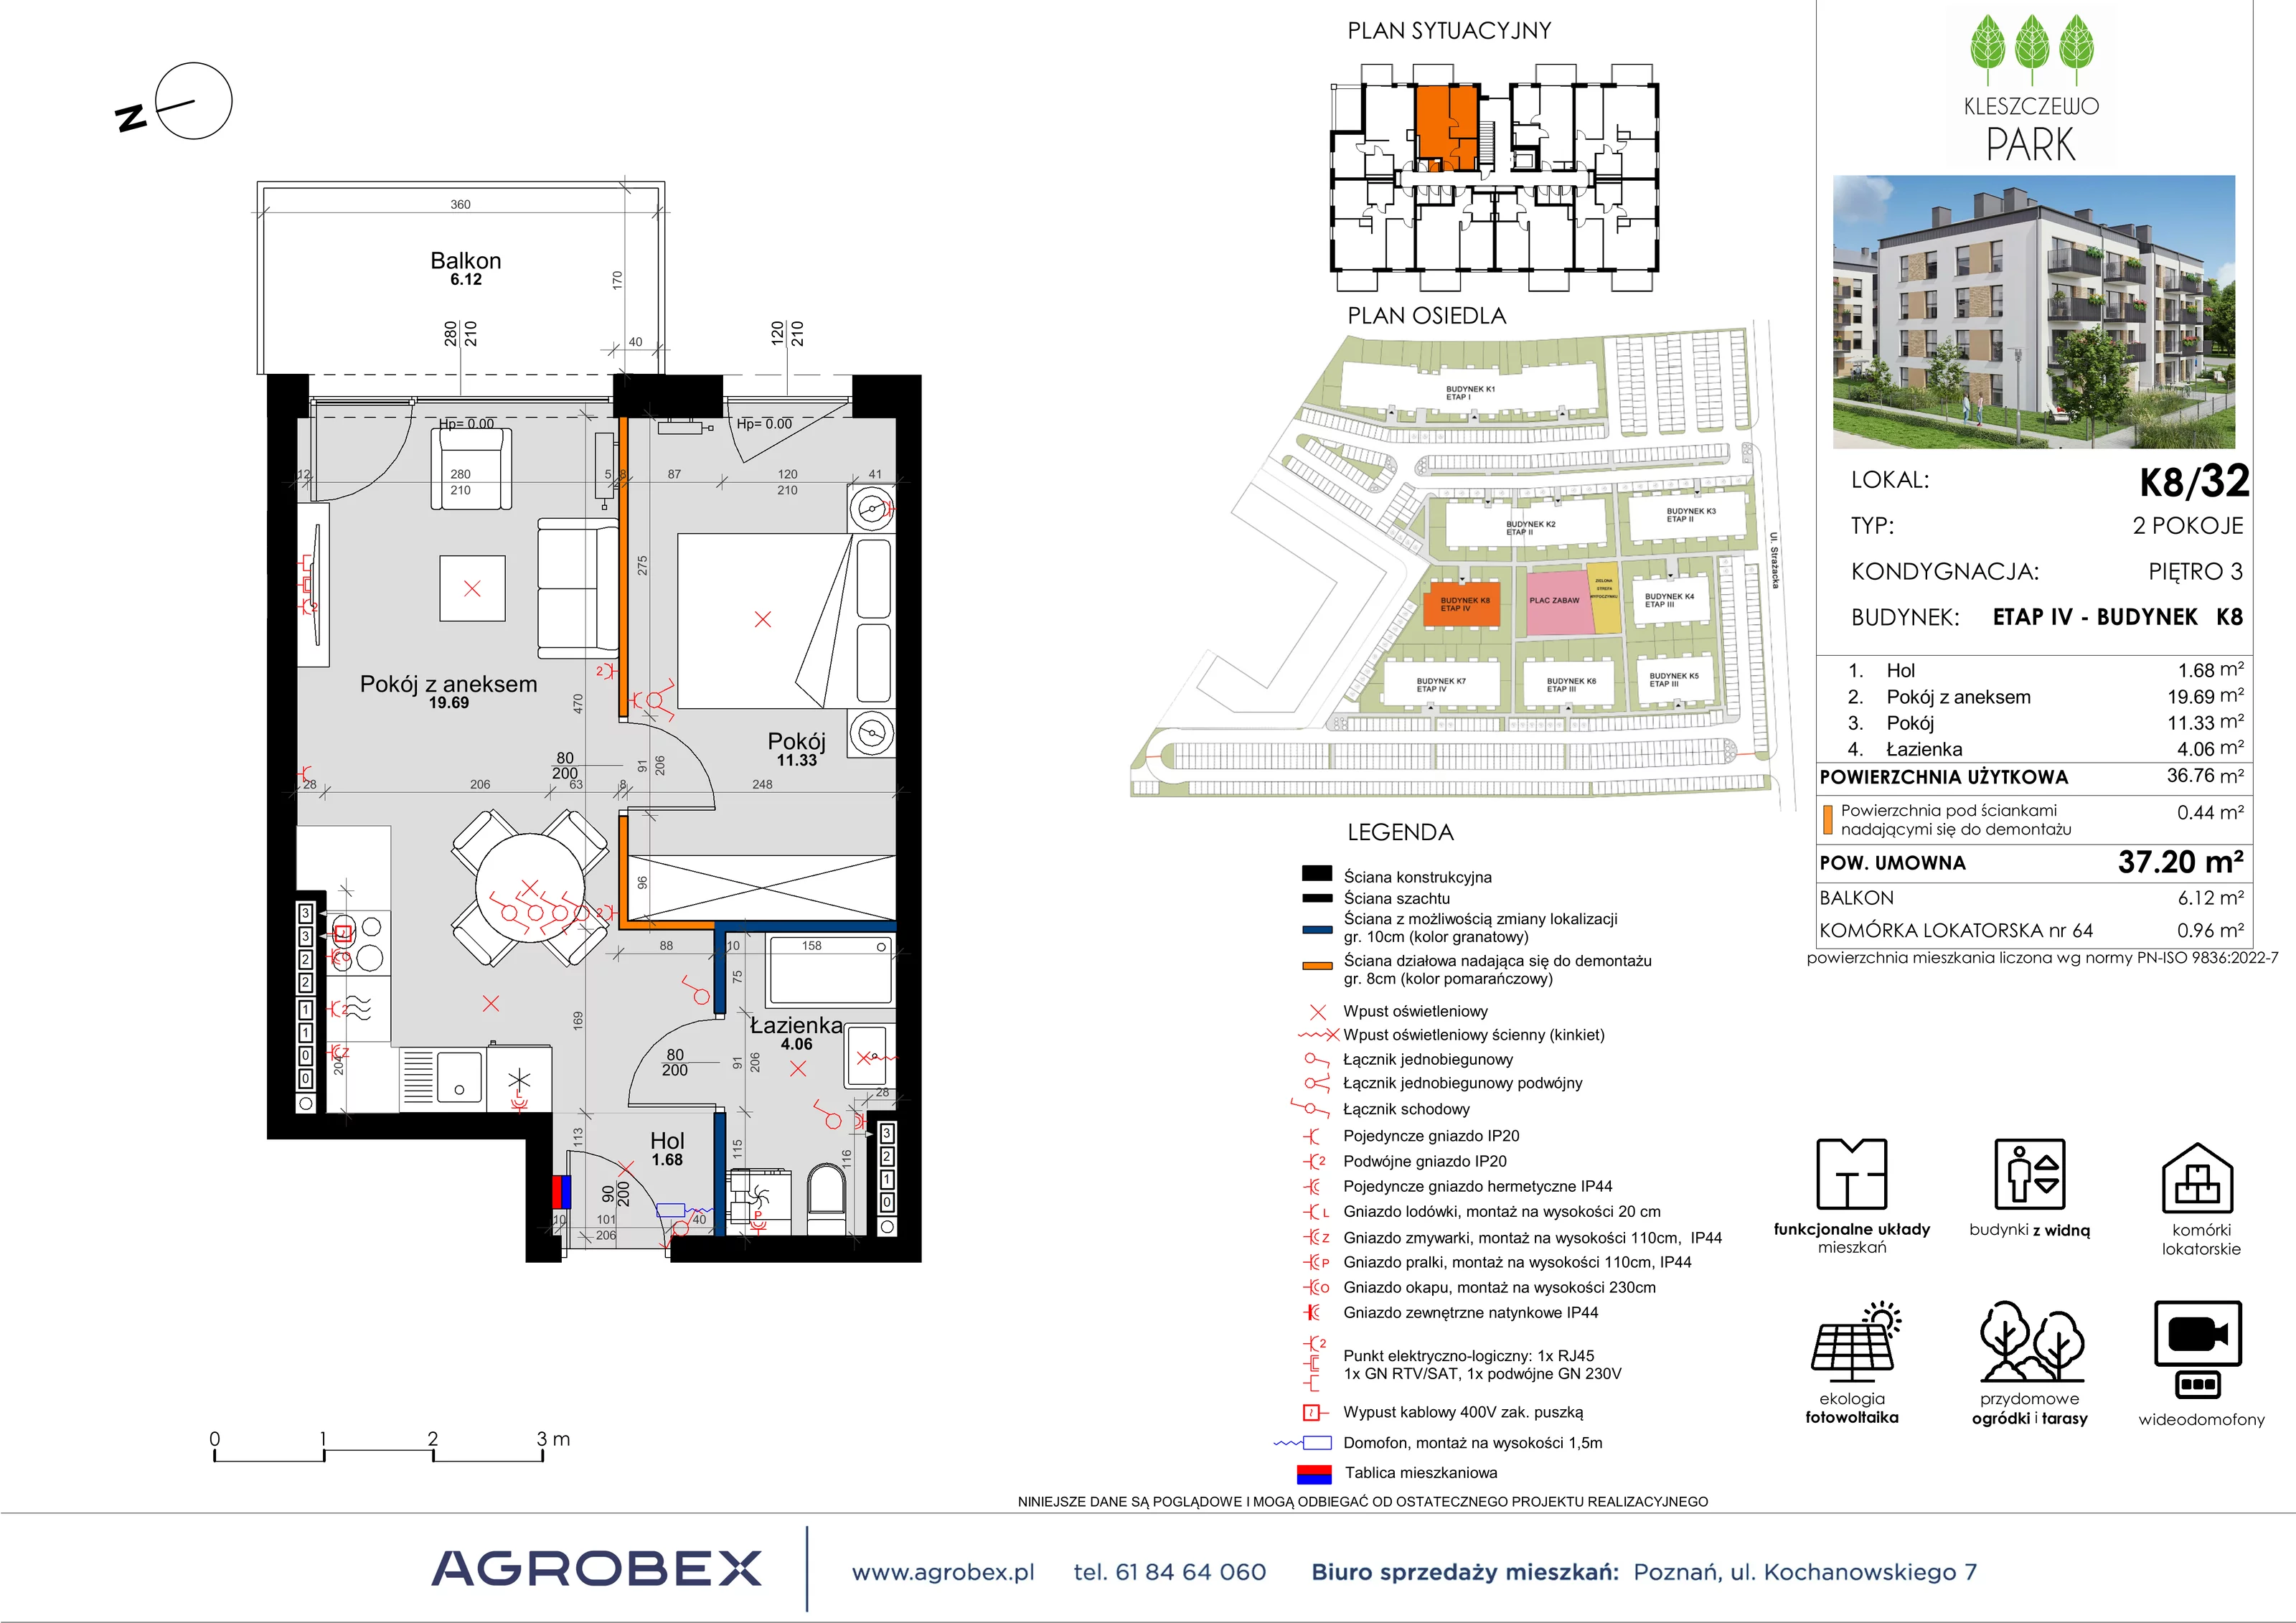 Mieszkanie 37,15 m², piętro 3, oferta nr K8/32, Kleszczewo Park, Kleszczewo, ul. Wiesławy Szymborskiej 1